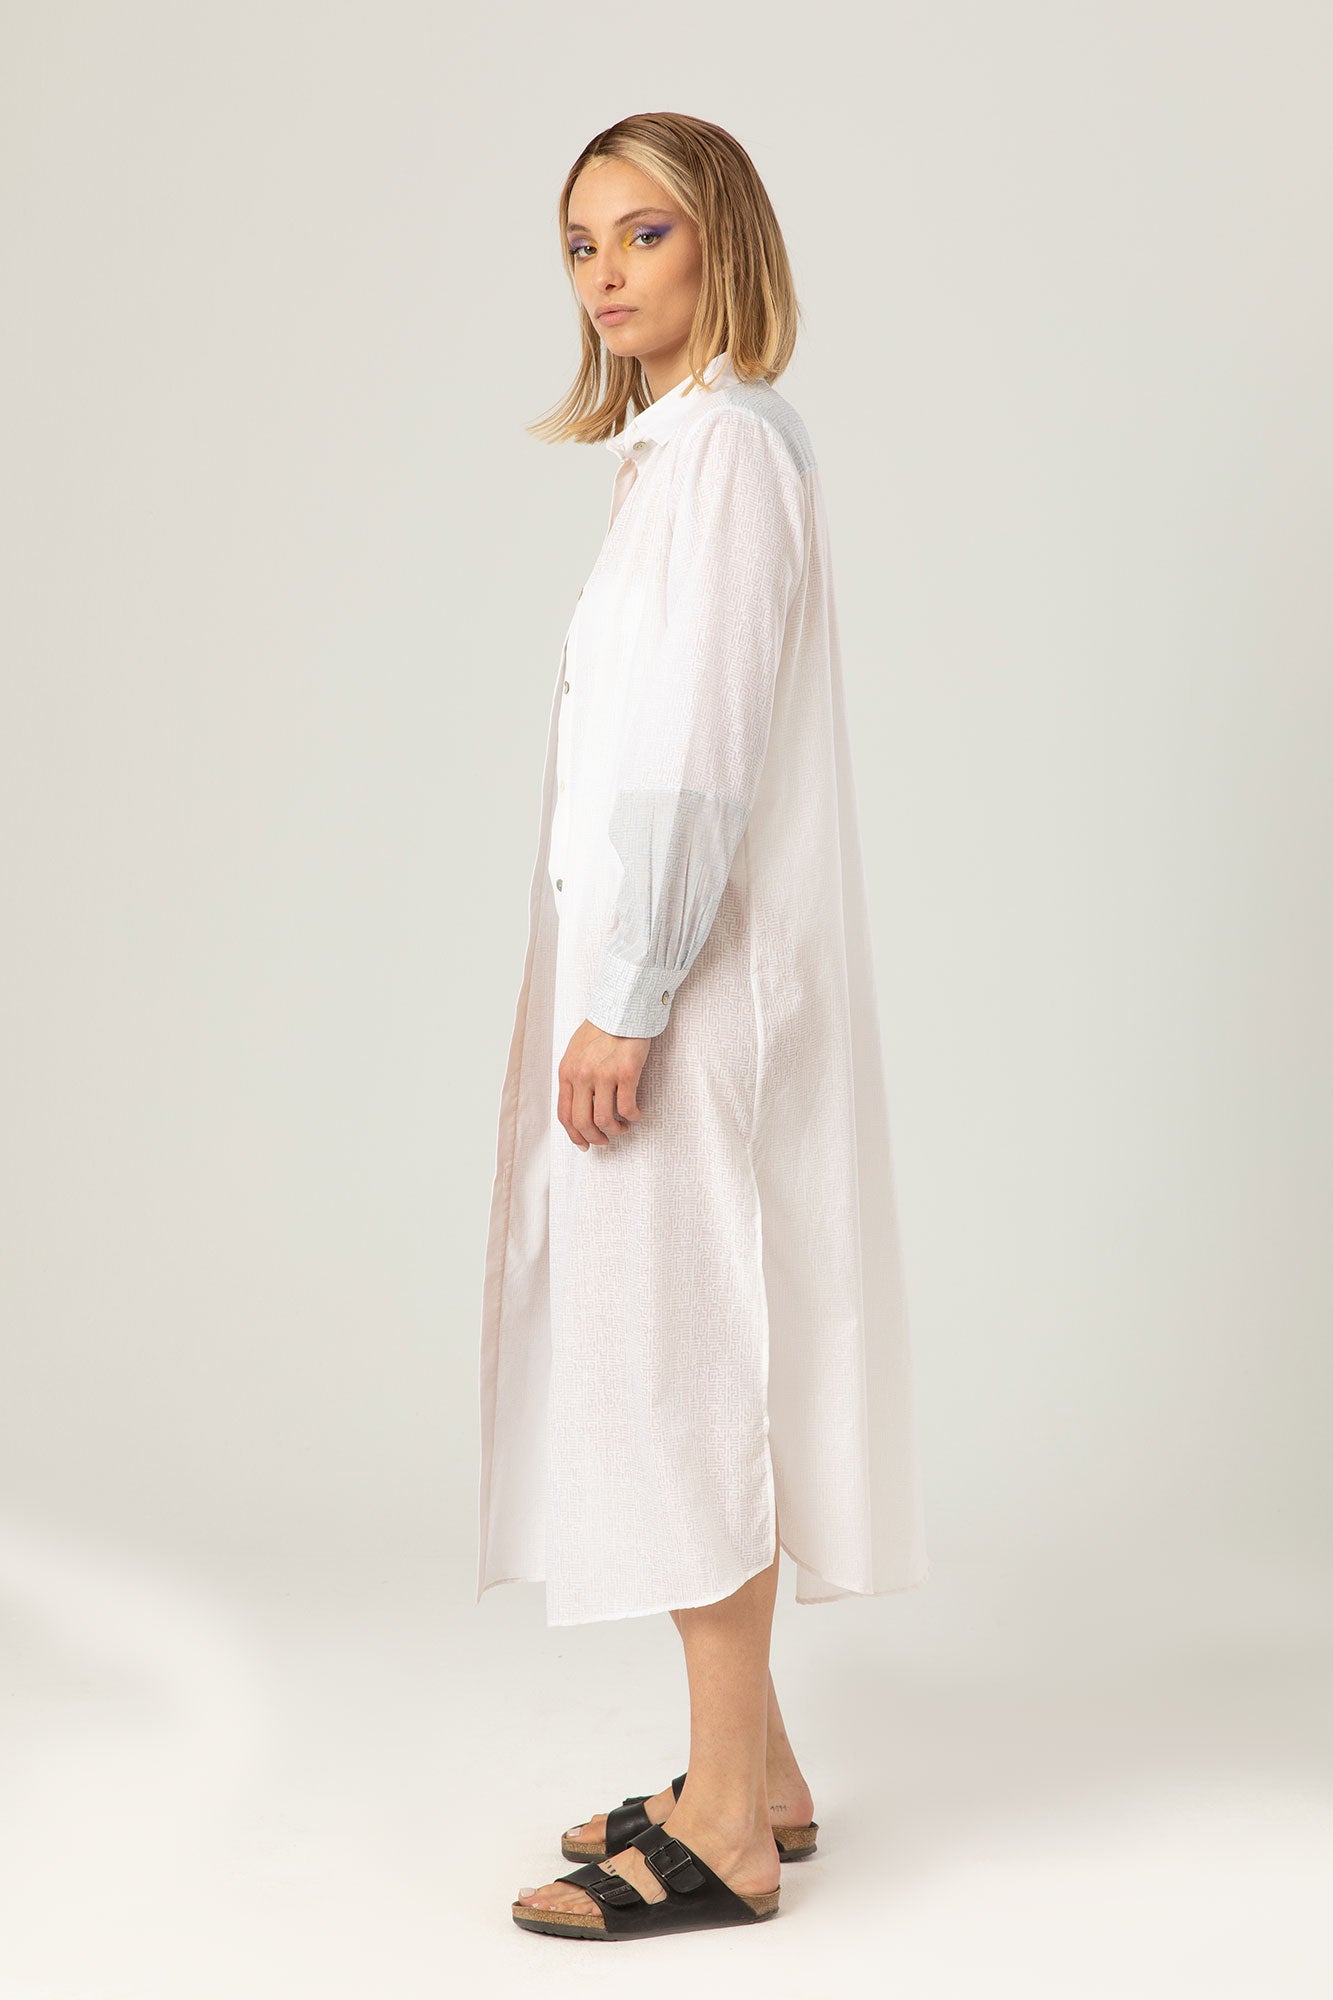 The Light Shirt Dress | Sheer White